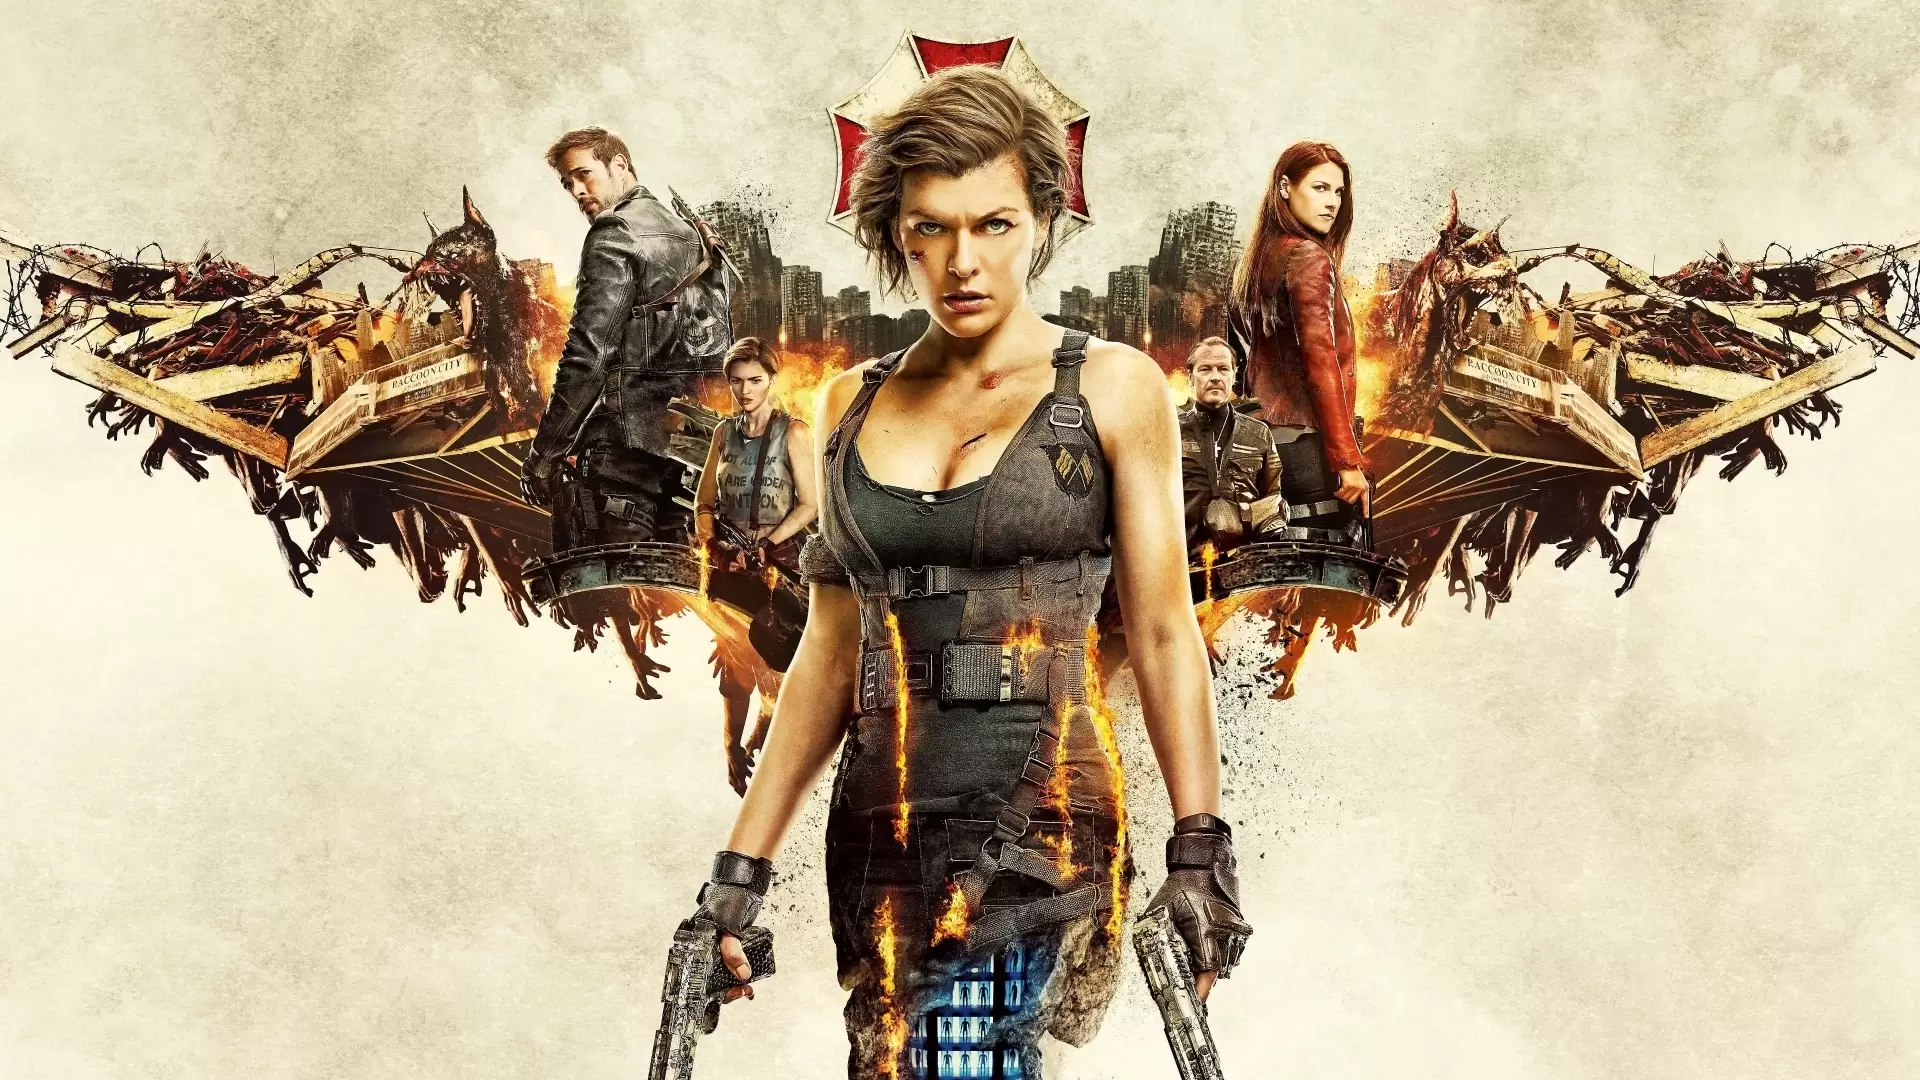 دانلود فیلم Resident Evil: The Final Chapter 2016 (رزیدنت ایول: قسمت پایانی) با زیرنویس فارسی و تماشای آنلاین